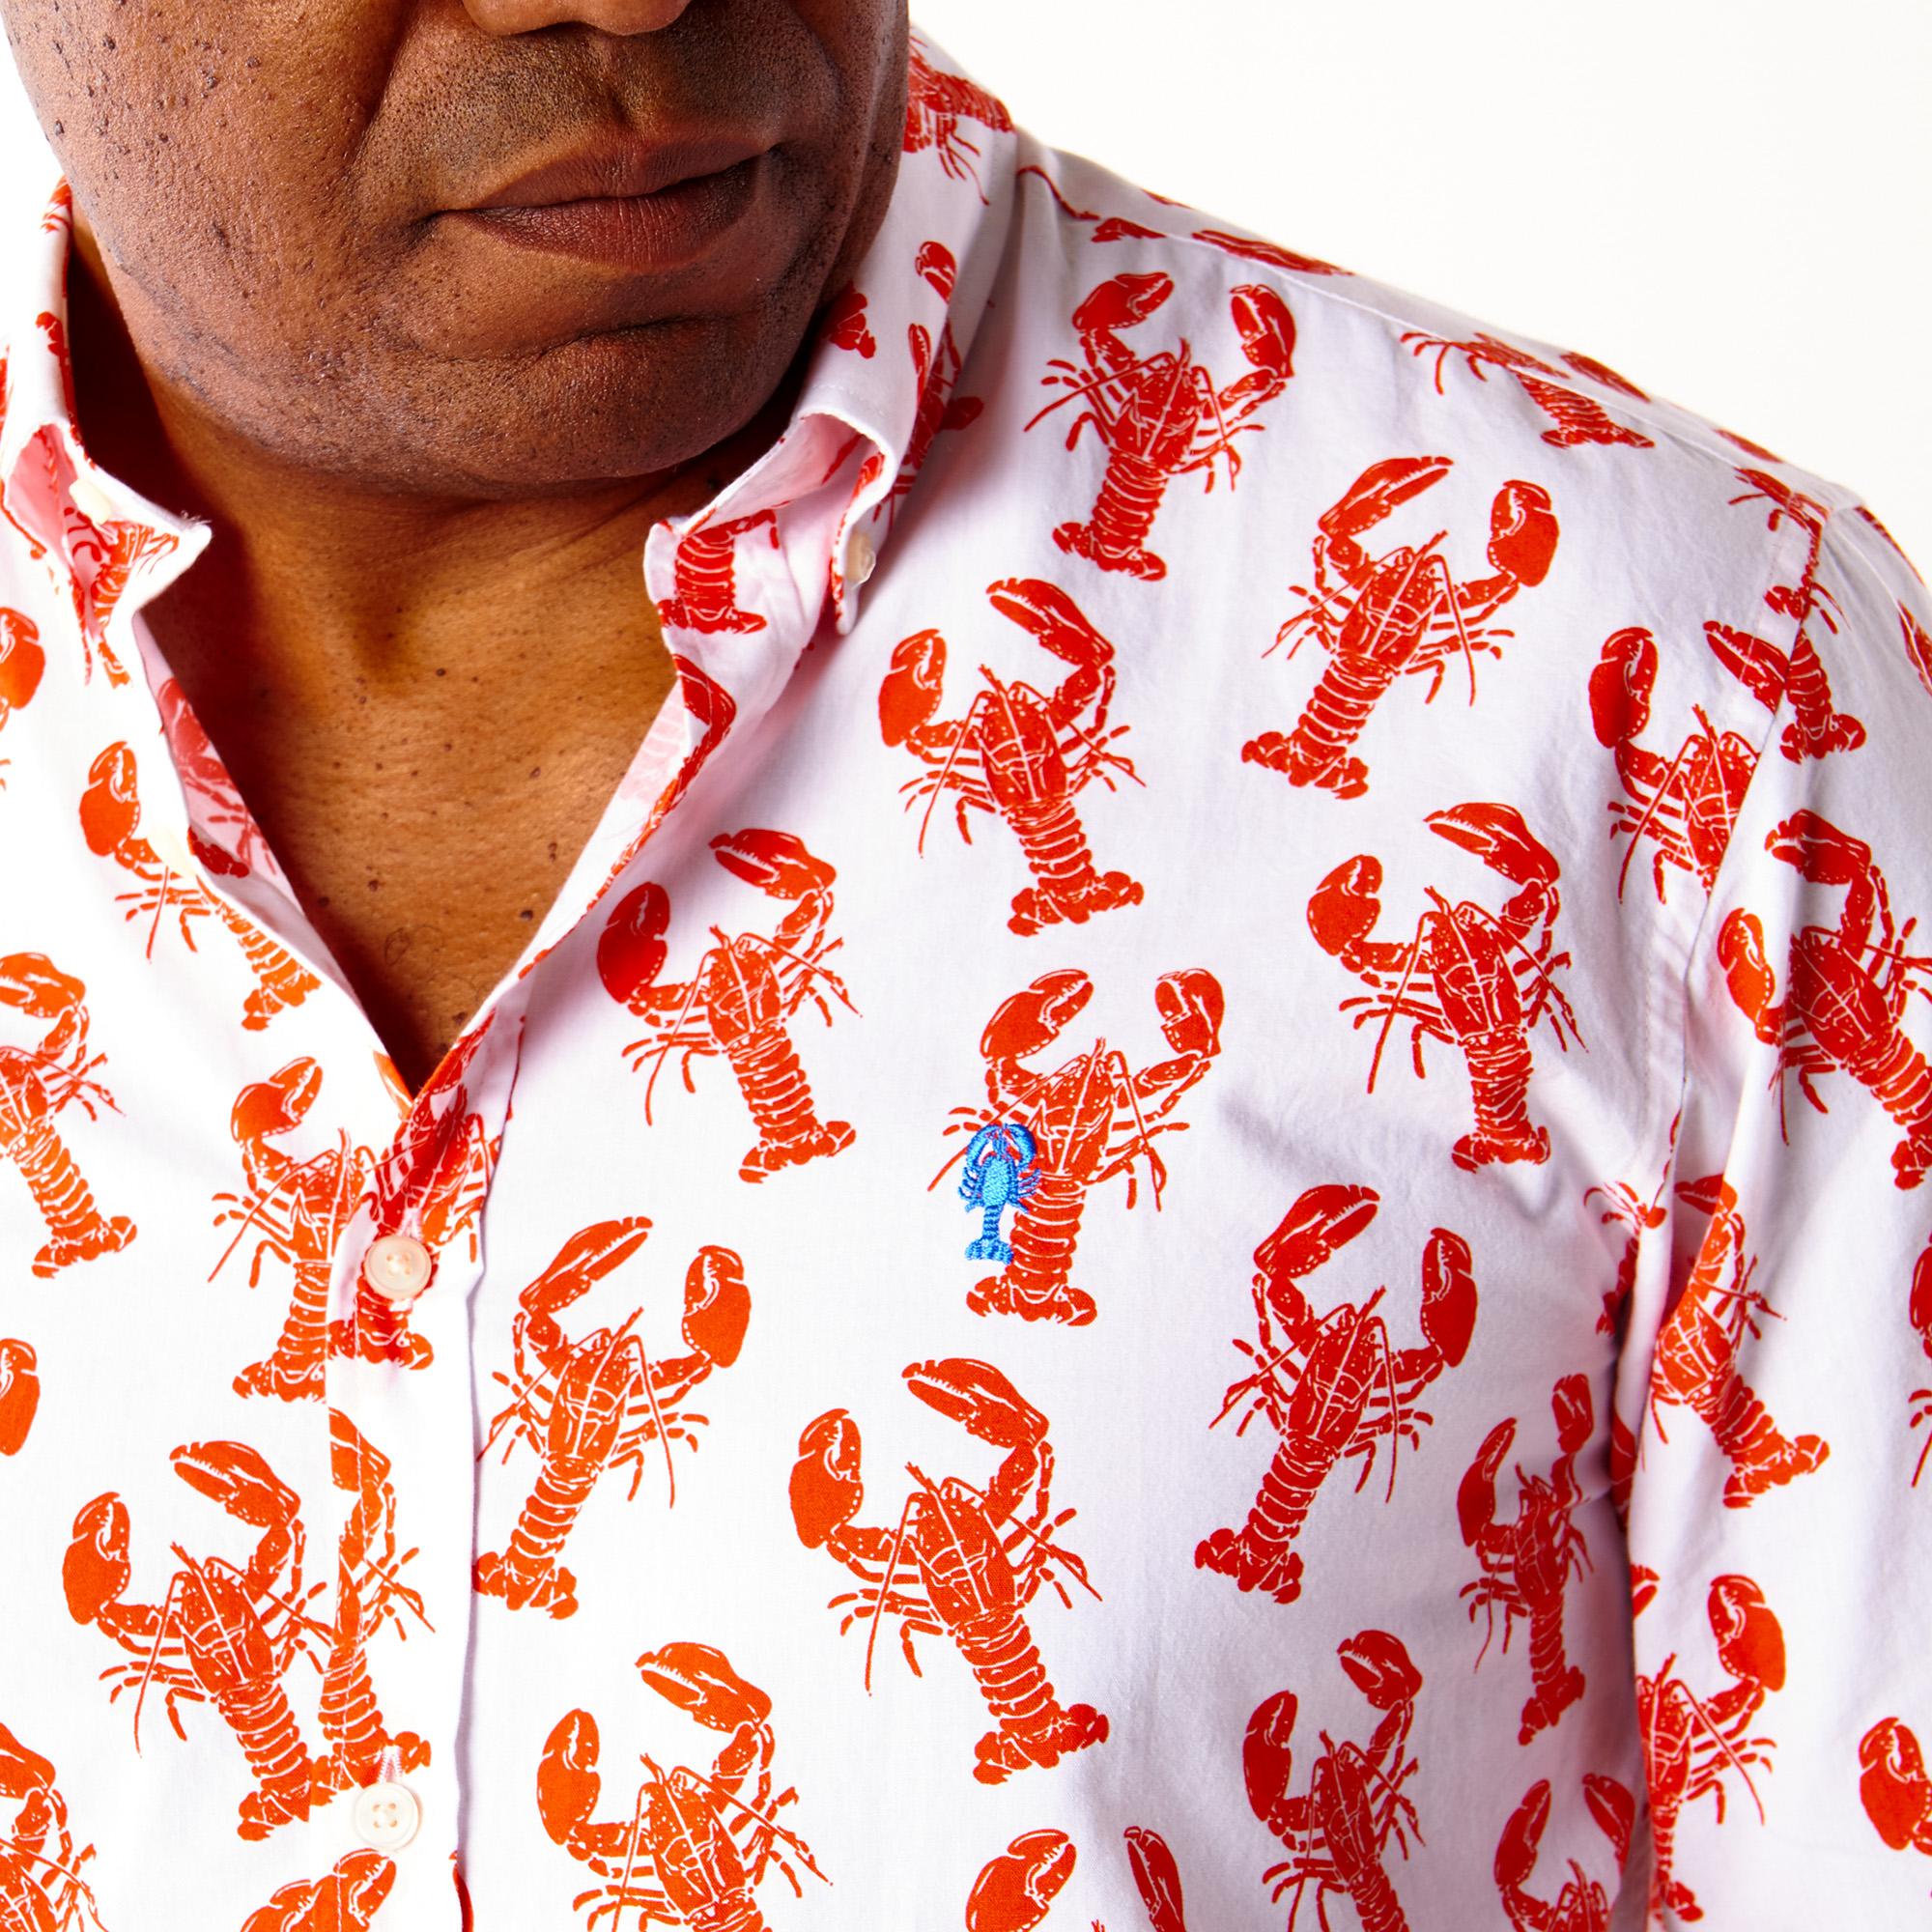 Une collection de chemises diversifiée, conçue pour s'adapter à chaque personnalité.